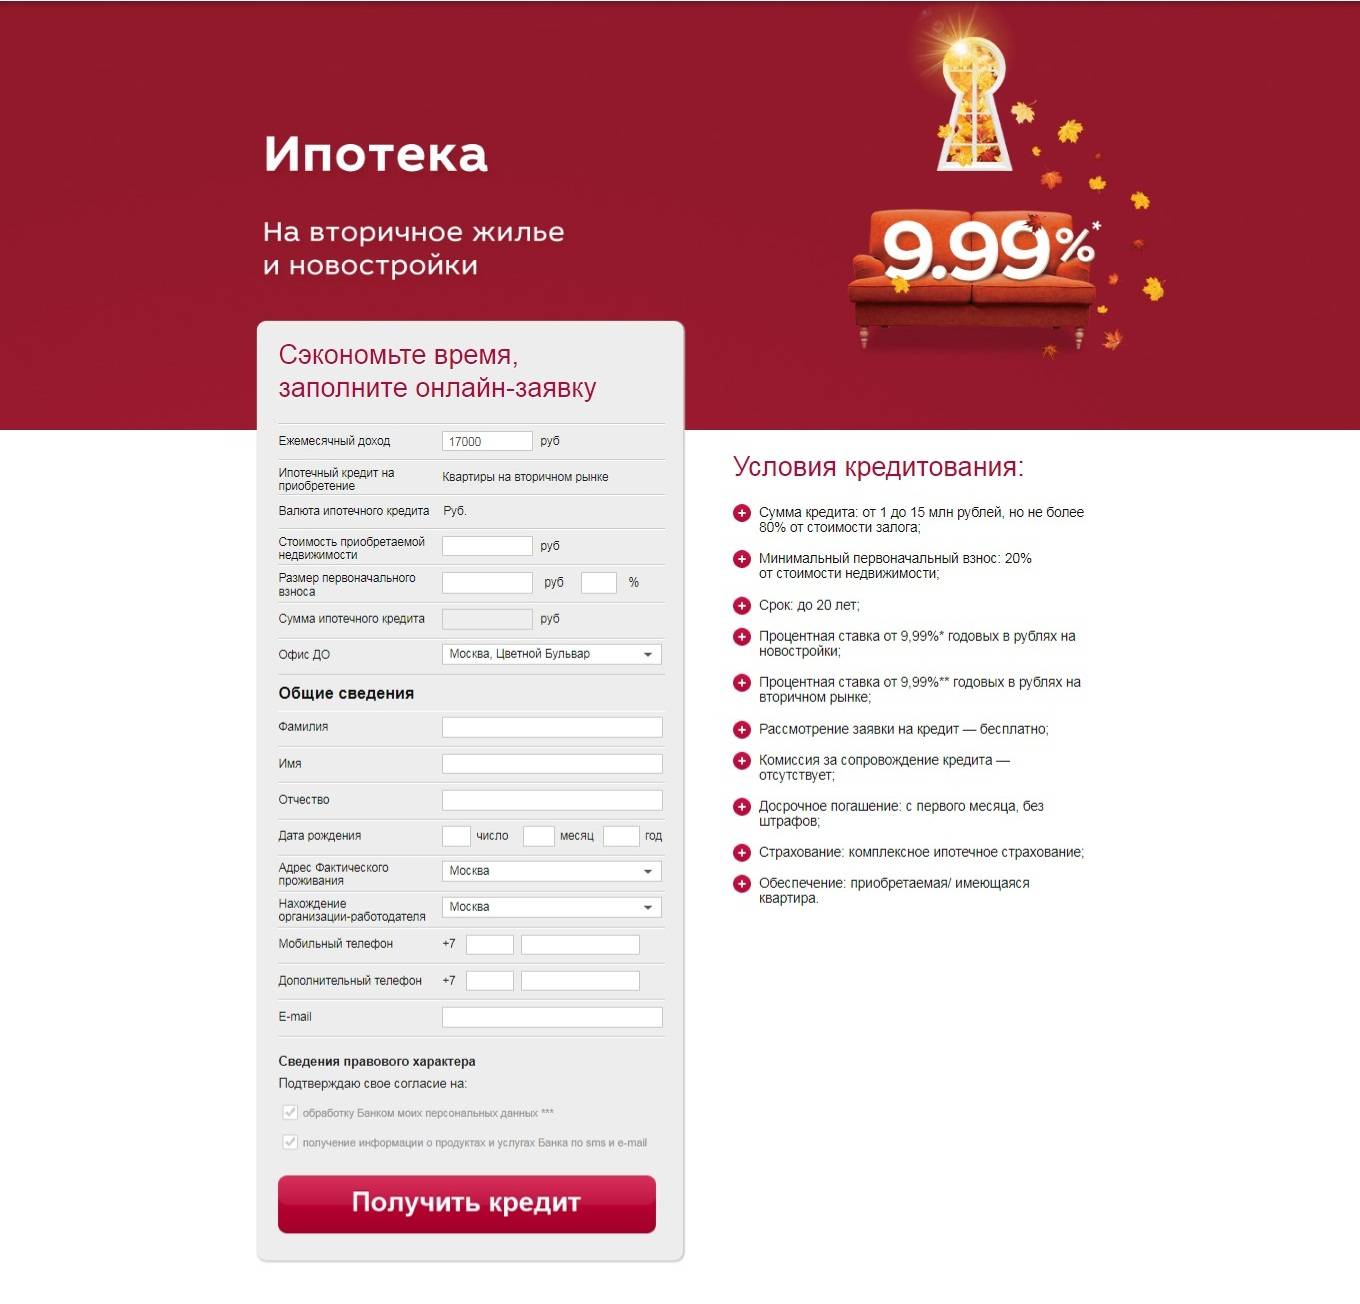 Условия оформления ипотеки в московском кредитном банке (мкб) в 2020 году